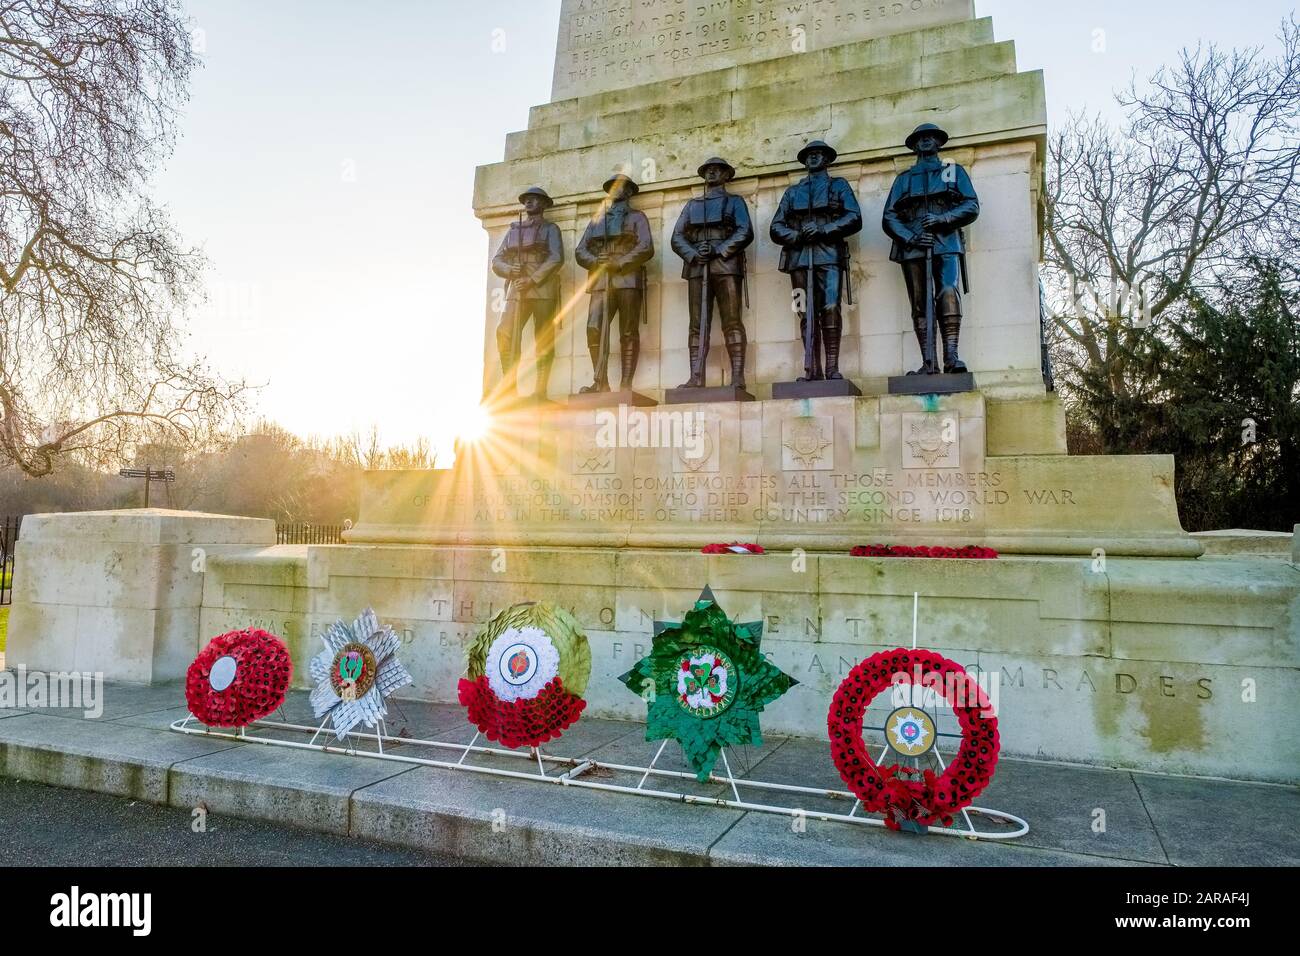 The Guards Memorial, également connu sous le nom de Guards Division War Memorial, près de Horse Guards Parade, Londres, Royaume-Uni Banque D'Images